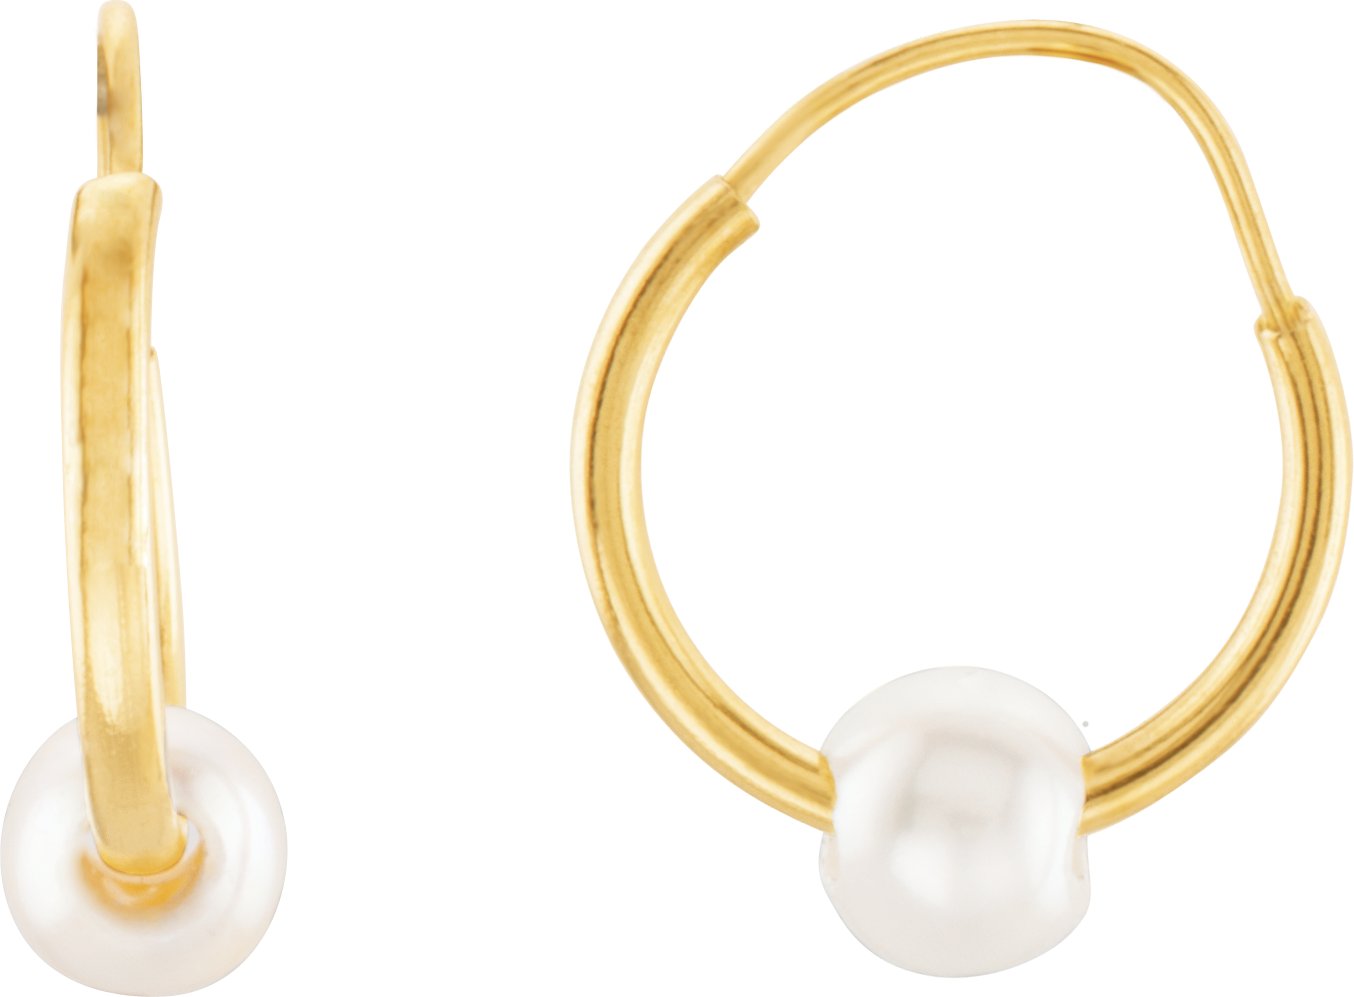 14K Yellow Freshwater Cultured Petite Pearl Hoop Earrings Ref. 1726221